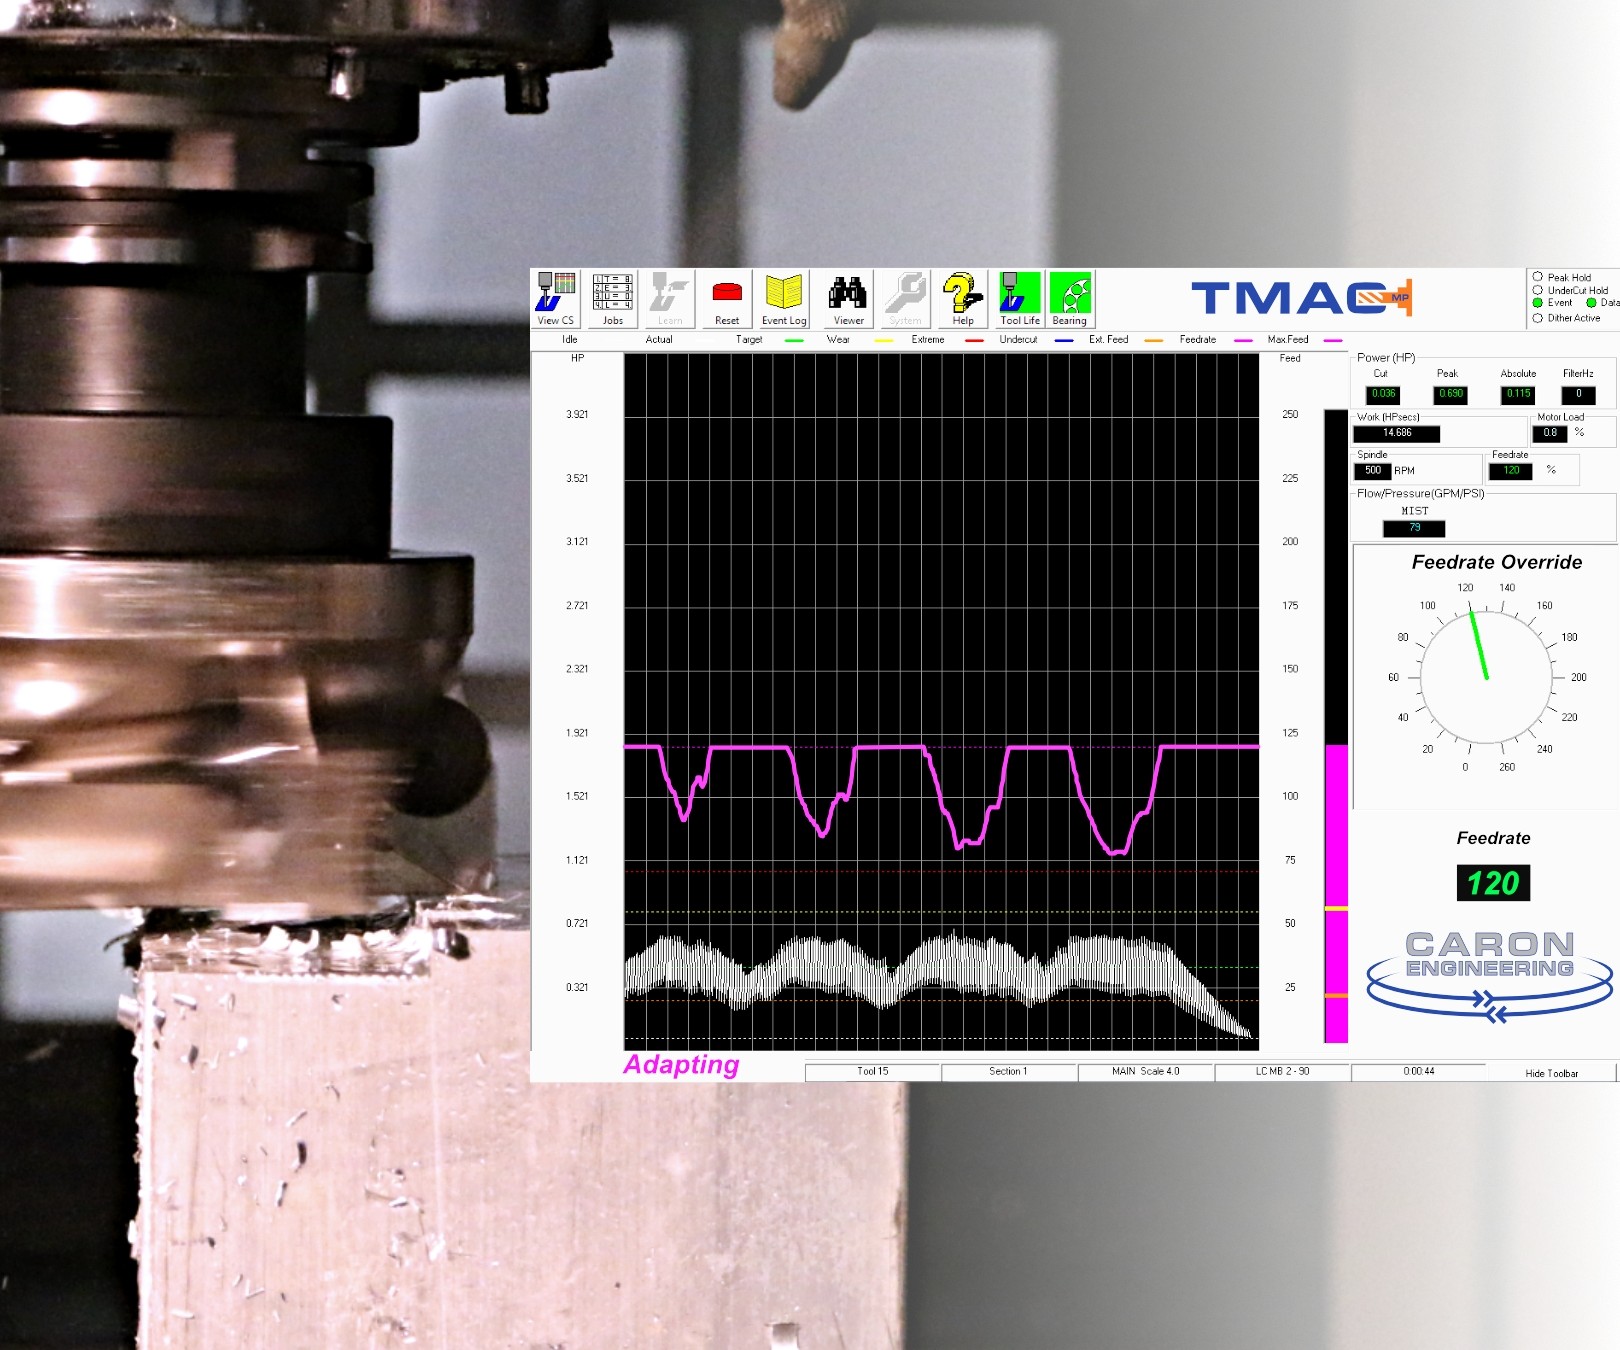 El TMAC MP de Caron Engineering es, ante todo y principalmente, un sistema de monitoreo de herramienta, con sensores instalados en la máquina y un procesador separado que muestra datos del husillo y la herramienta.